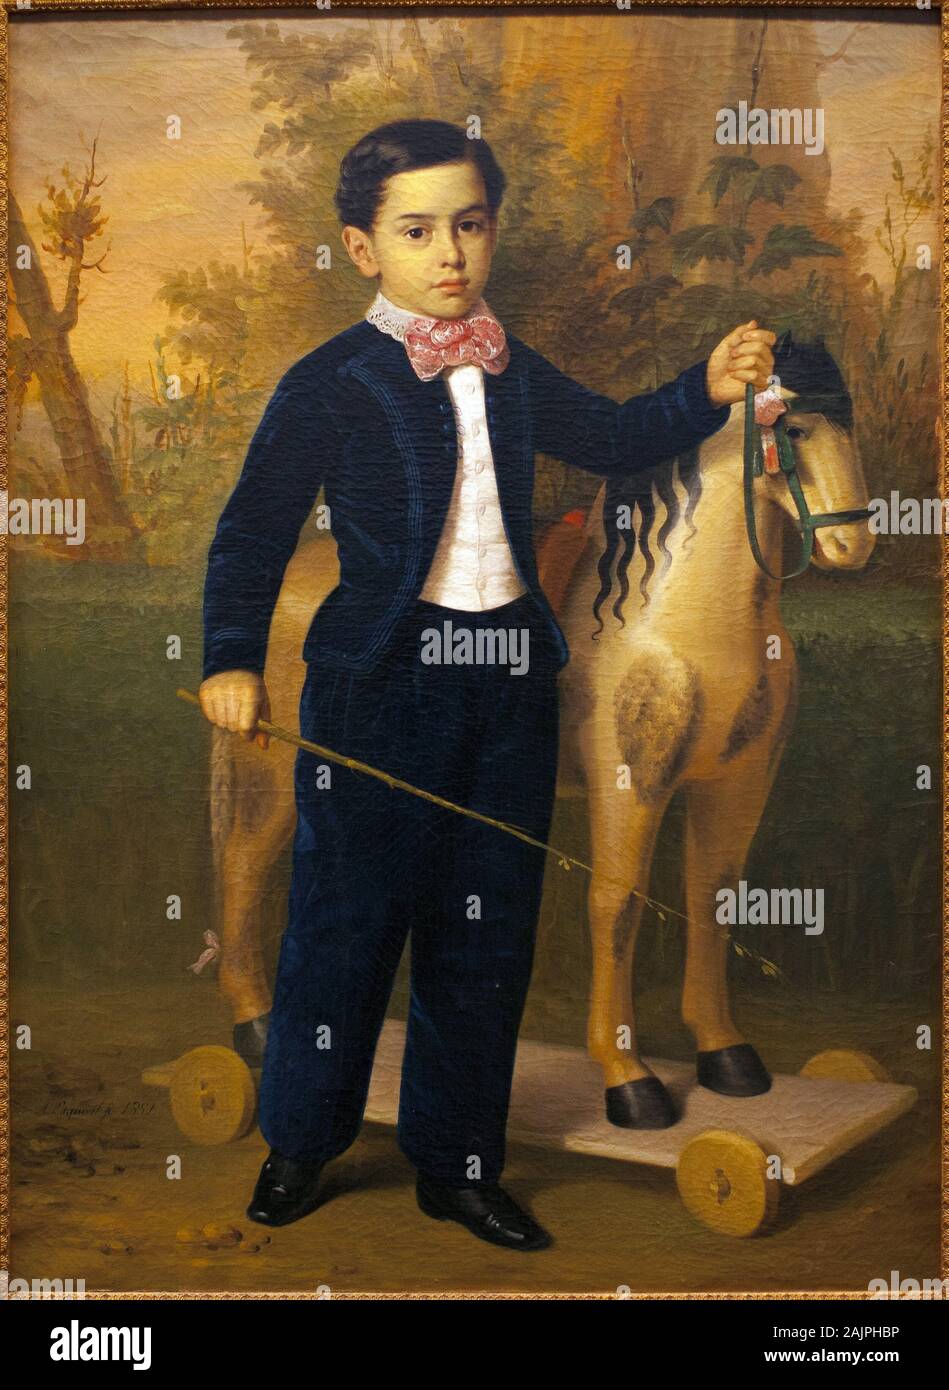 Ritratto d'onu petit garcon avec onu cheval de bois. Peinture de Antonio Maria Esquivel (1806-1857), Huile sur toile, ves 1851. Musee des Beaux Arts de Foto Stock